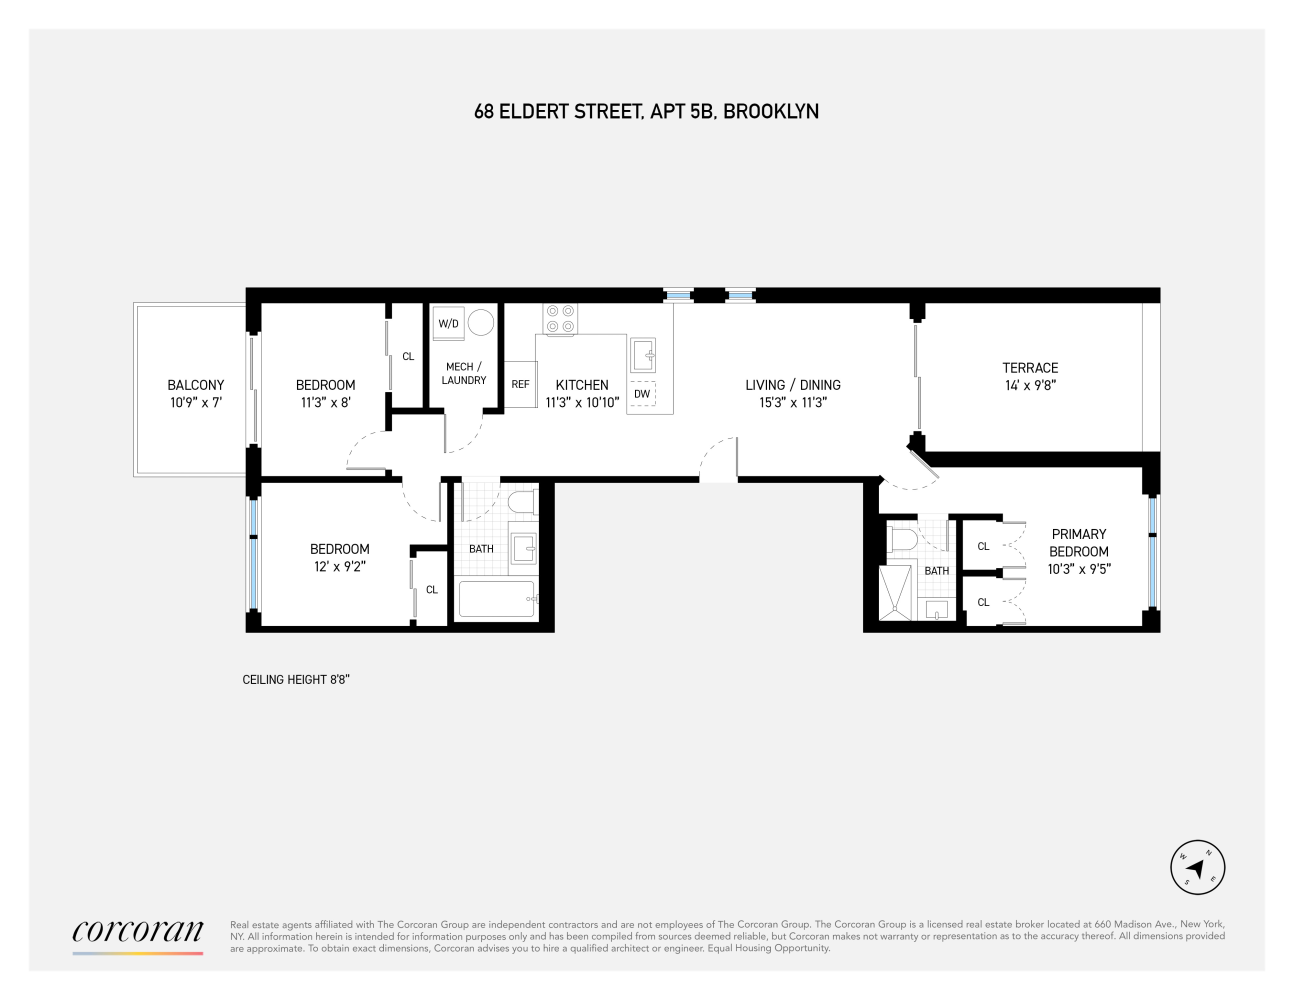 Floorplan for 68 Eldert Street, PH